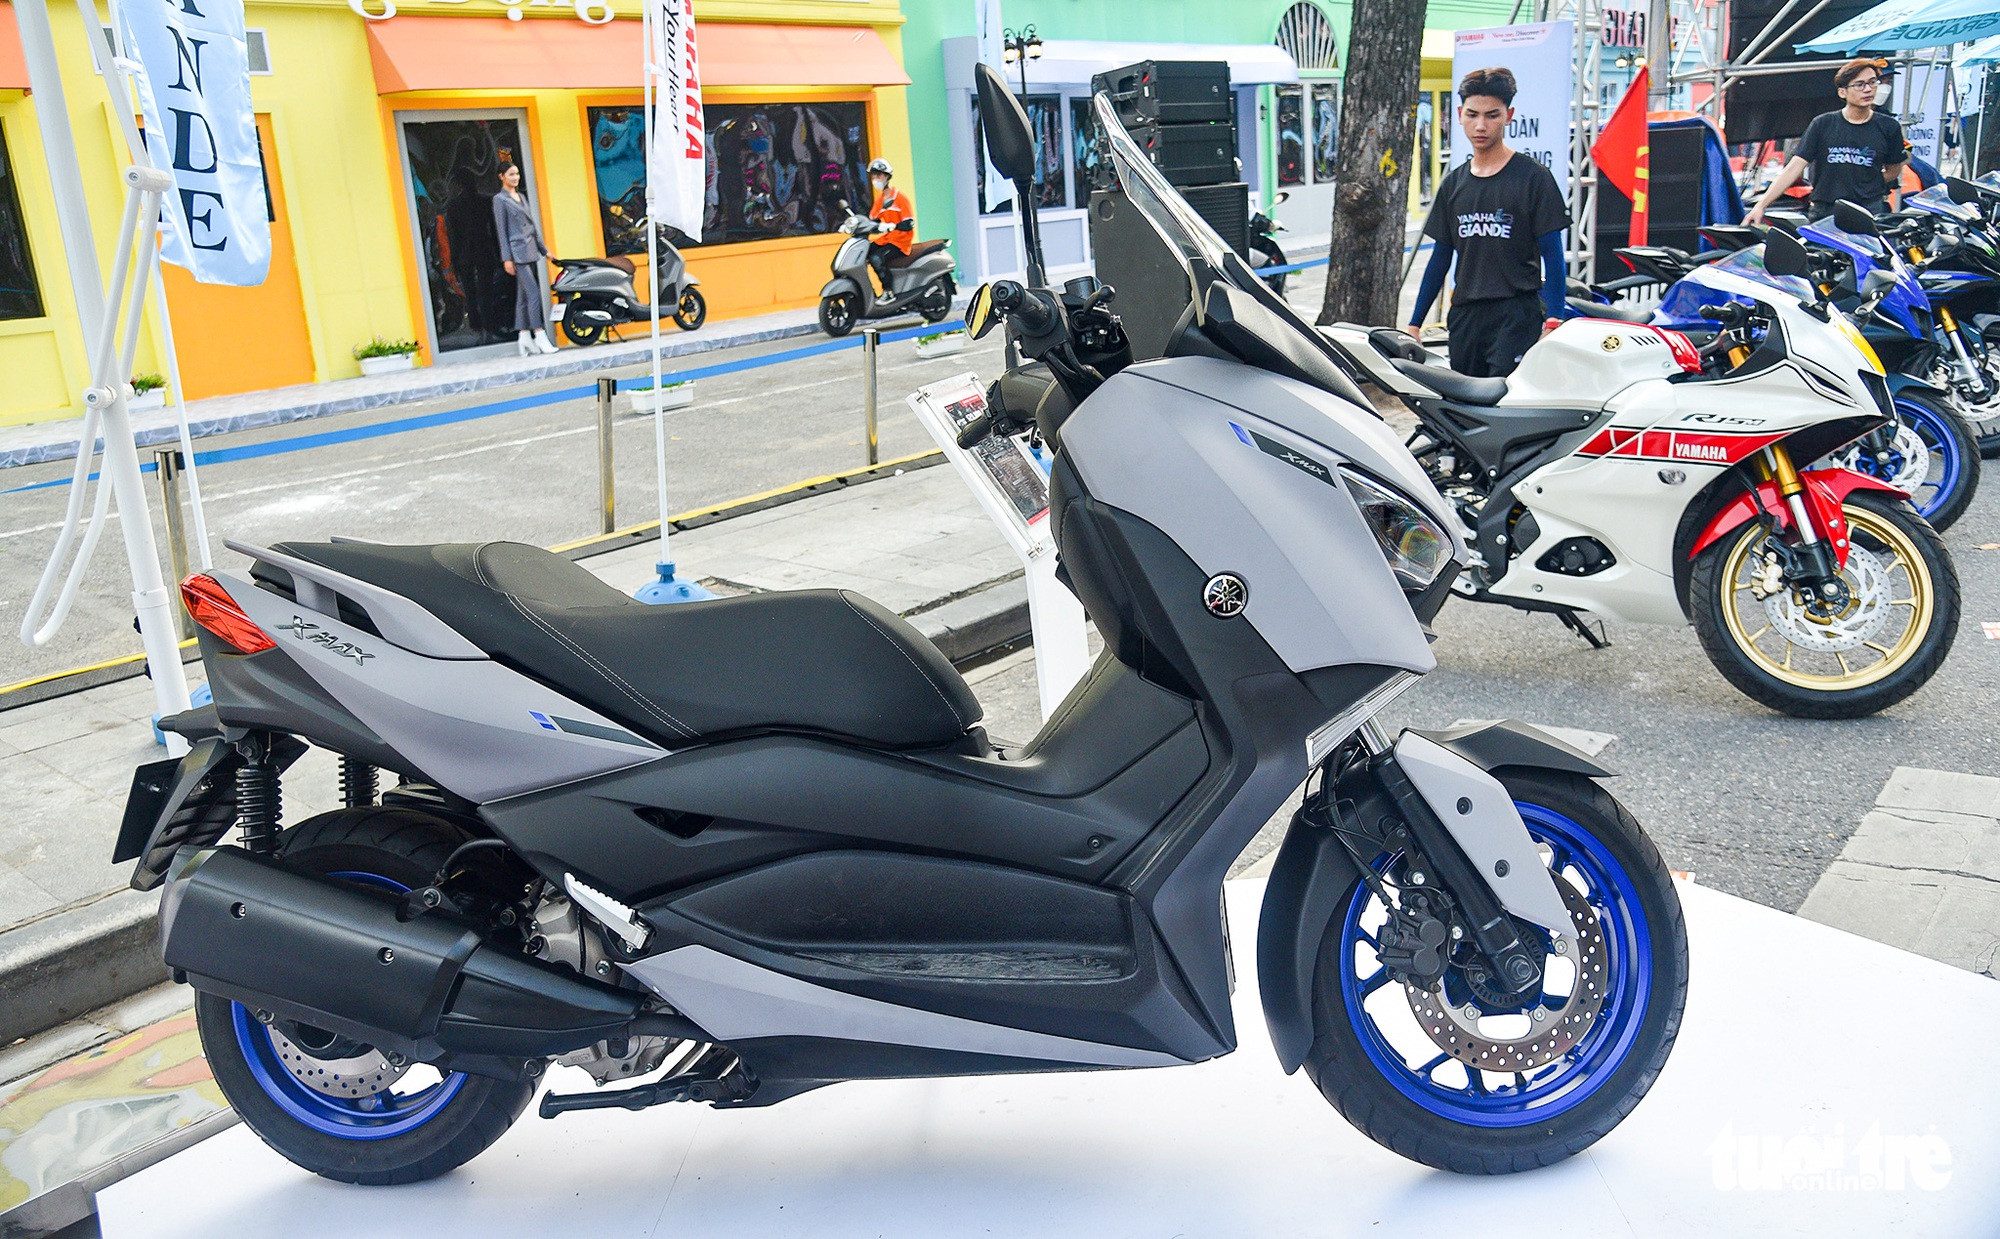 Yamaha X Max 300 nhận đặt hàng tại Việt Nam, giá từ 129 triệu đồng - Ảnh 1.